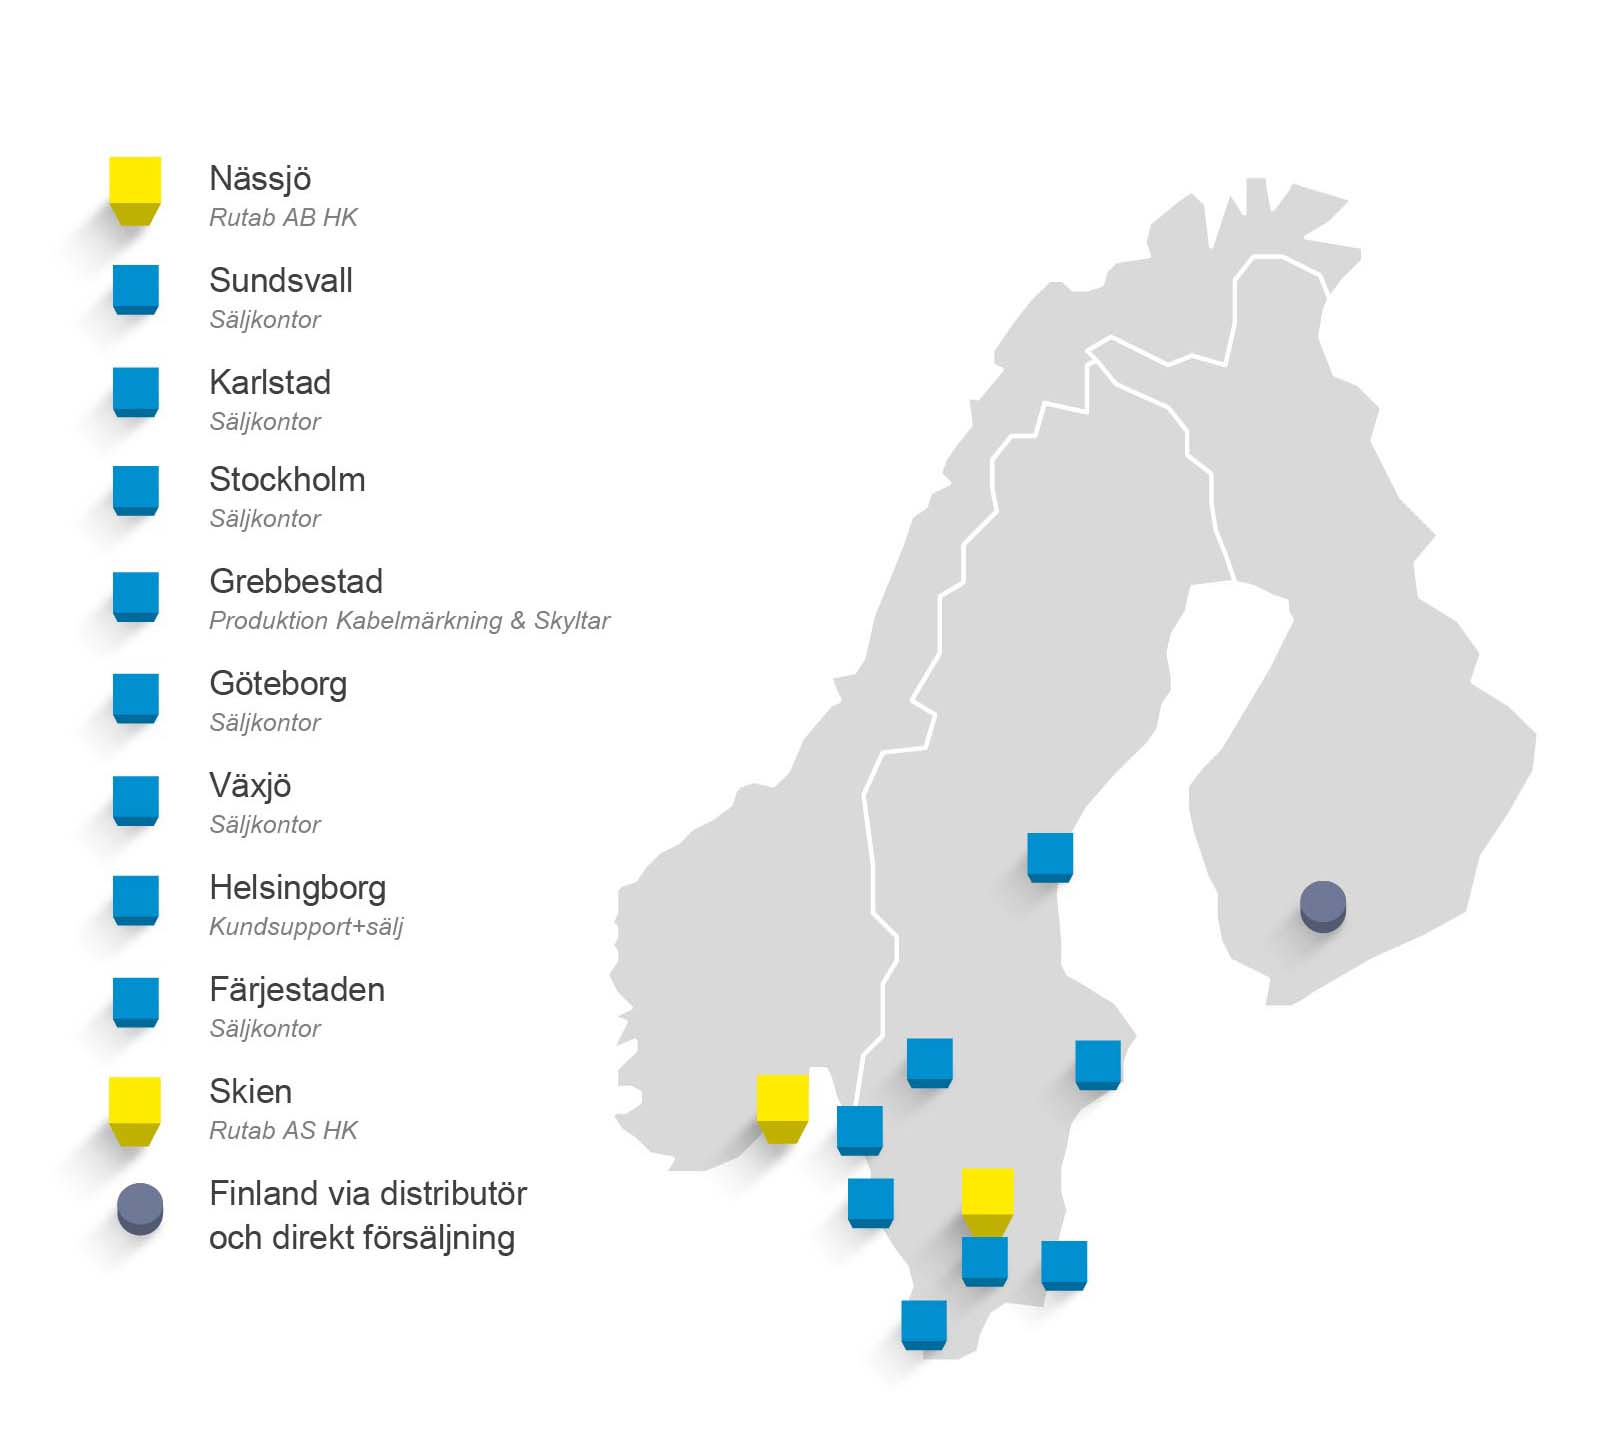 NordiskNärvaro_2020_SE.jpg